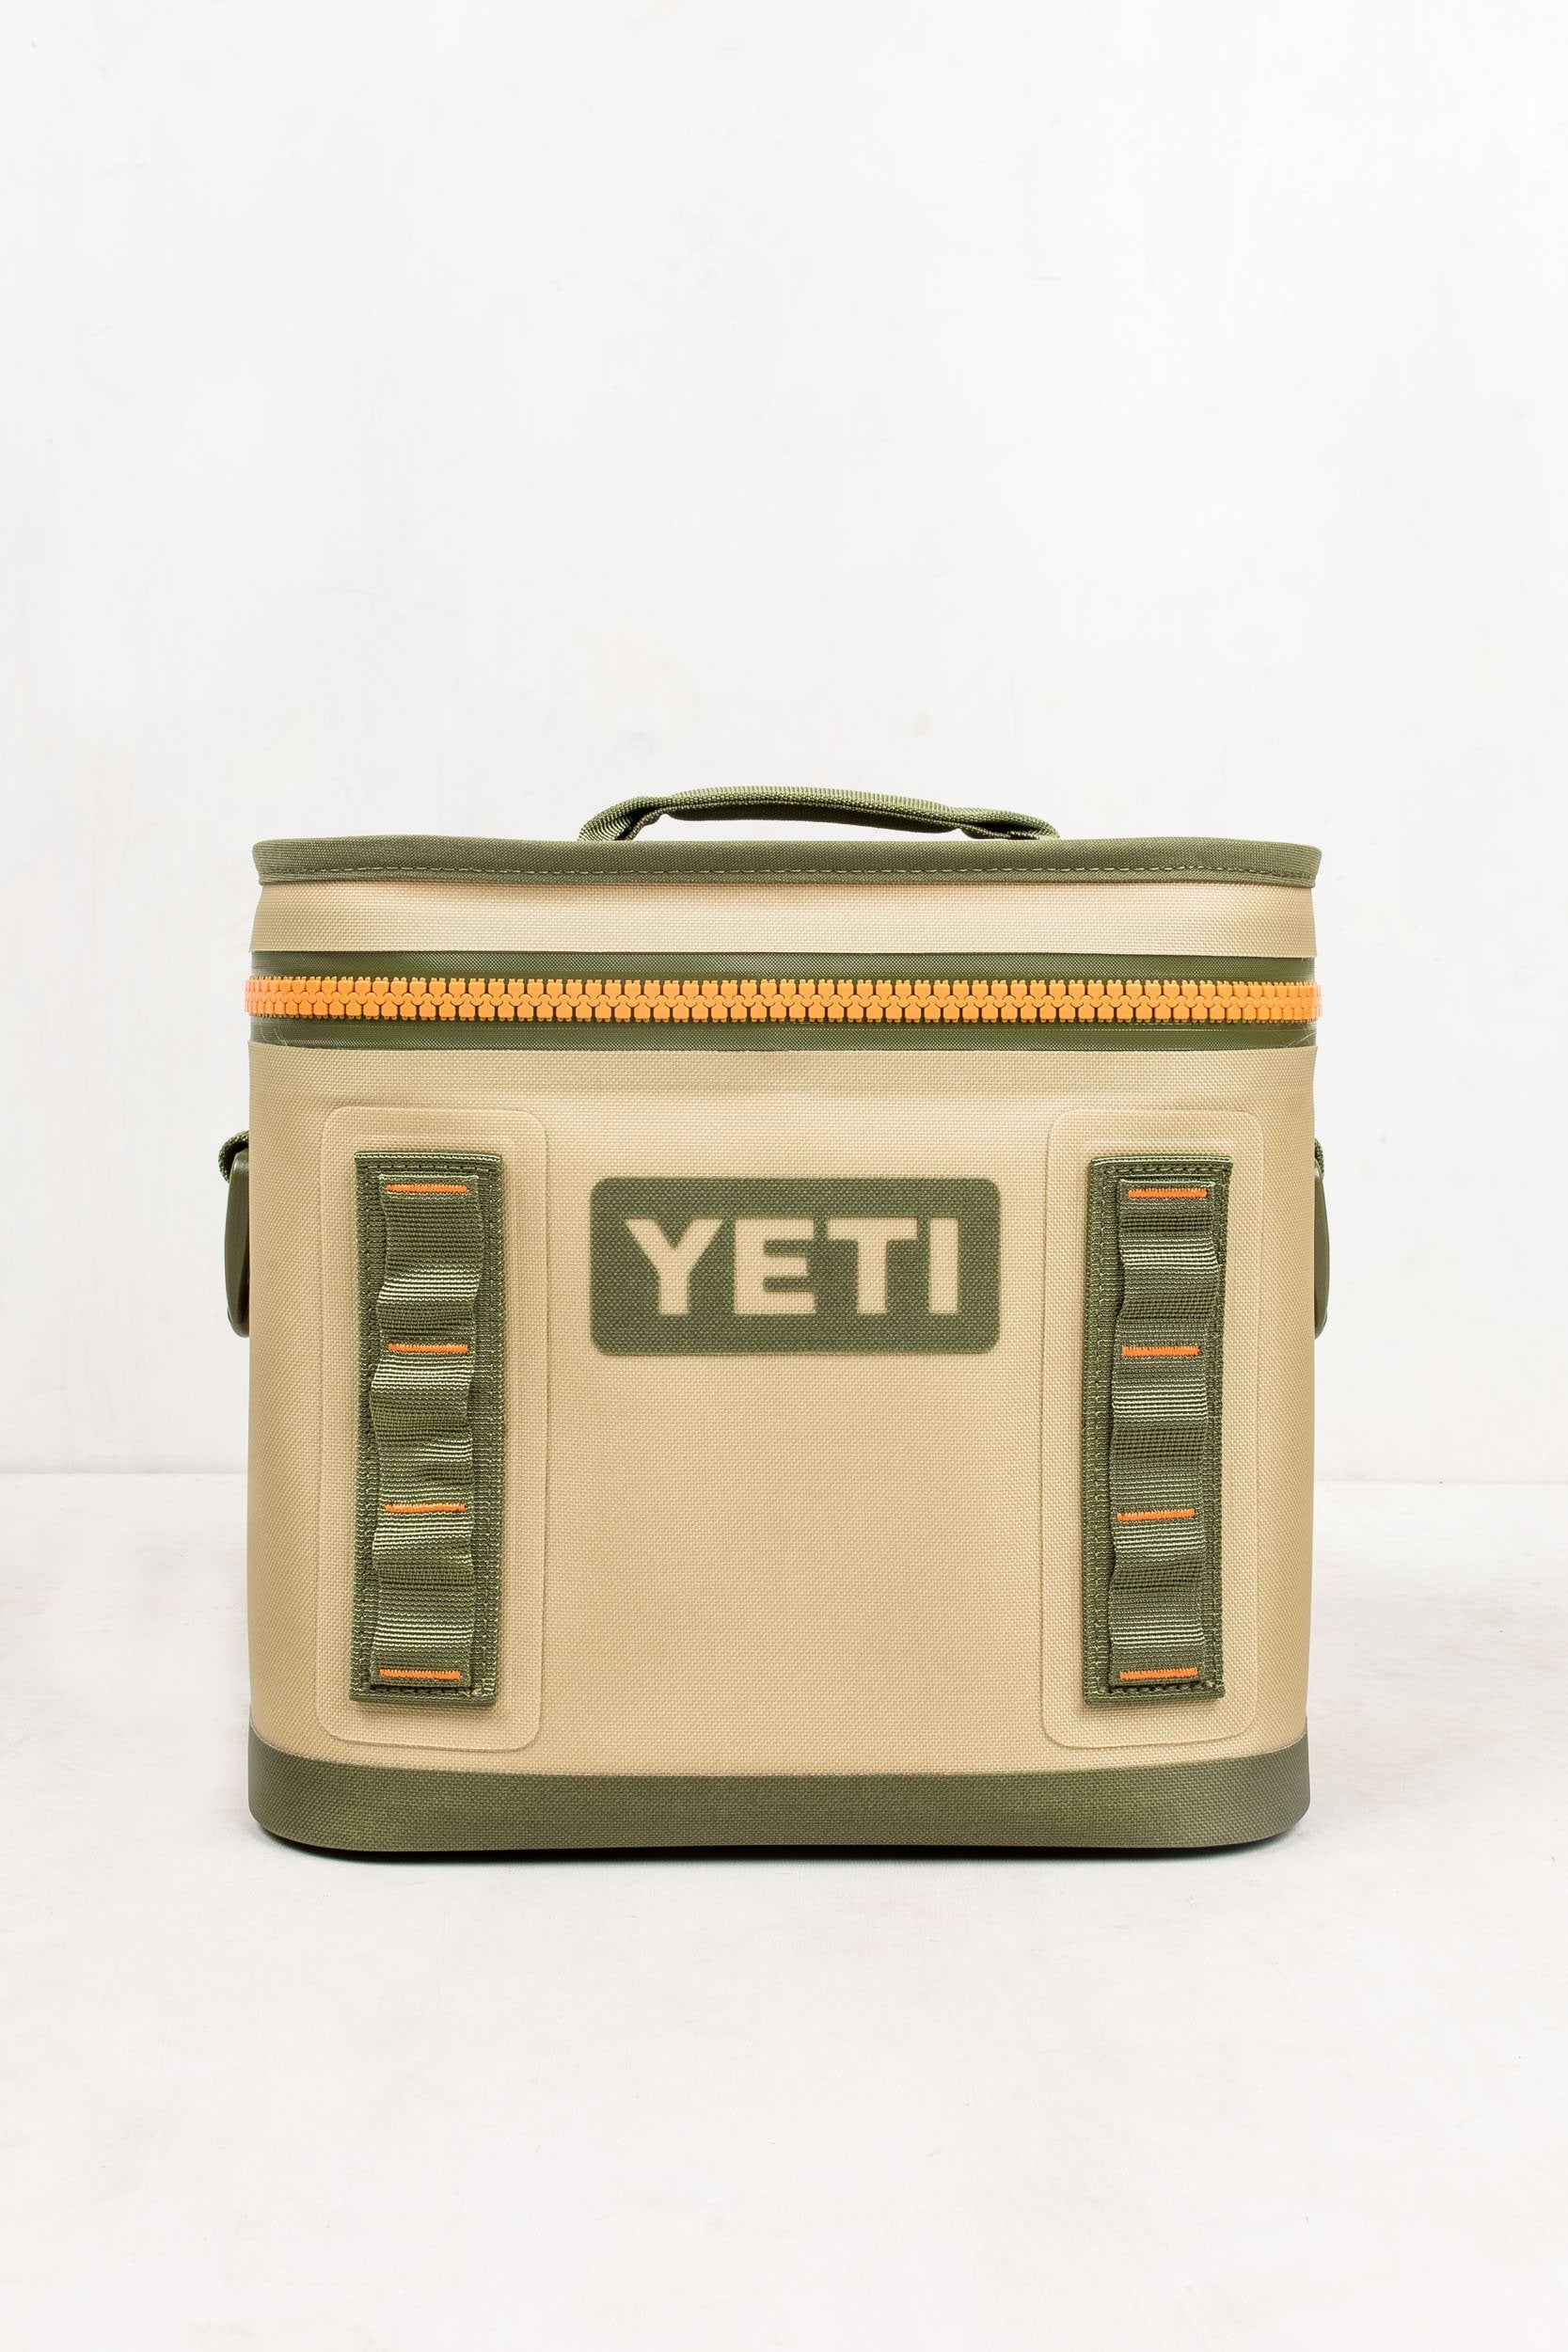 Yeti Hopper Flip 8 - BEST LUNCH BOX FOR MEN & WOMEN! 